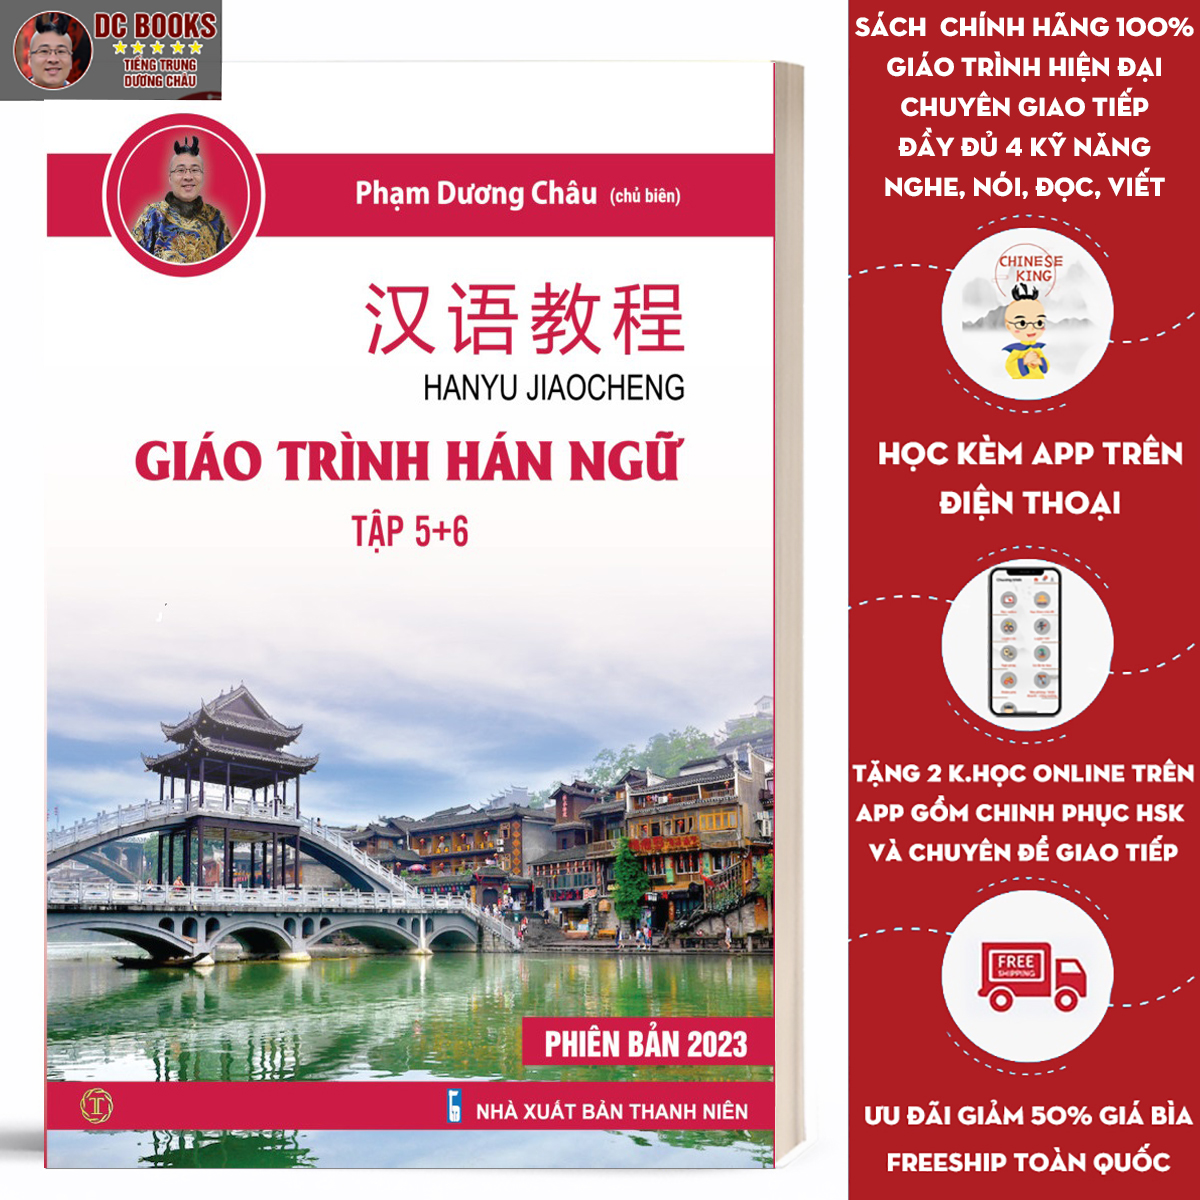 Sách Giáo Trình Hán Ngữ 5 + 6 - Tự Học Tiếng Trung Cấp Tốc Cho Người Việt - Trình độ HSK 5,6 - Phiên Bản Đặc Biệt - Tiếng Trung Dương Châu (kèm Audio)